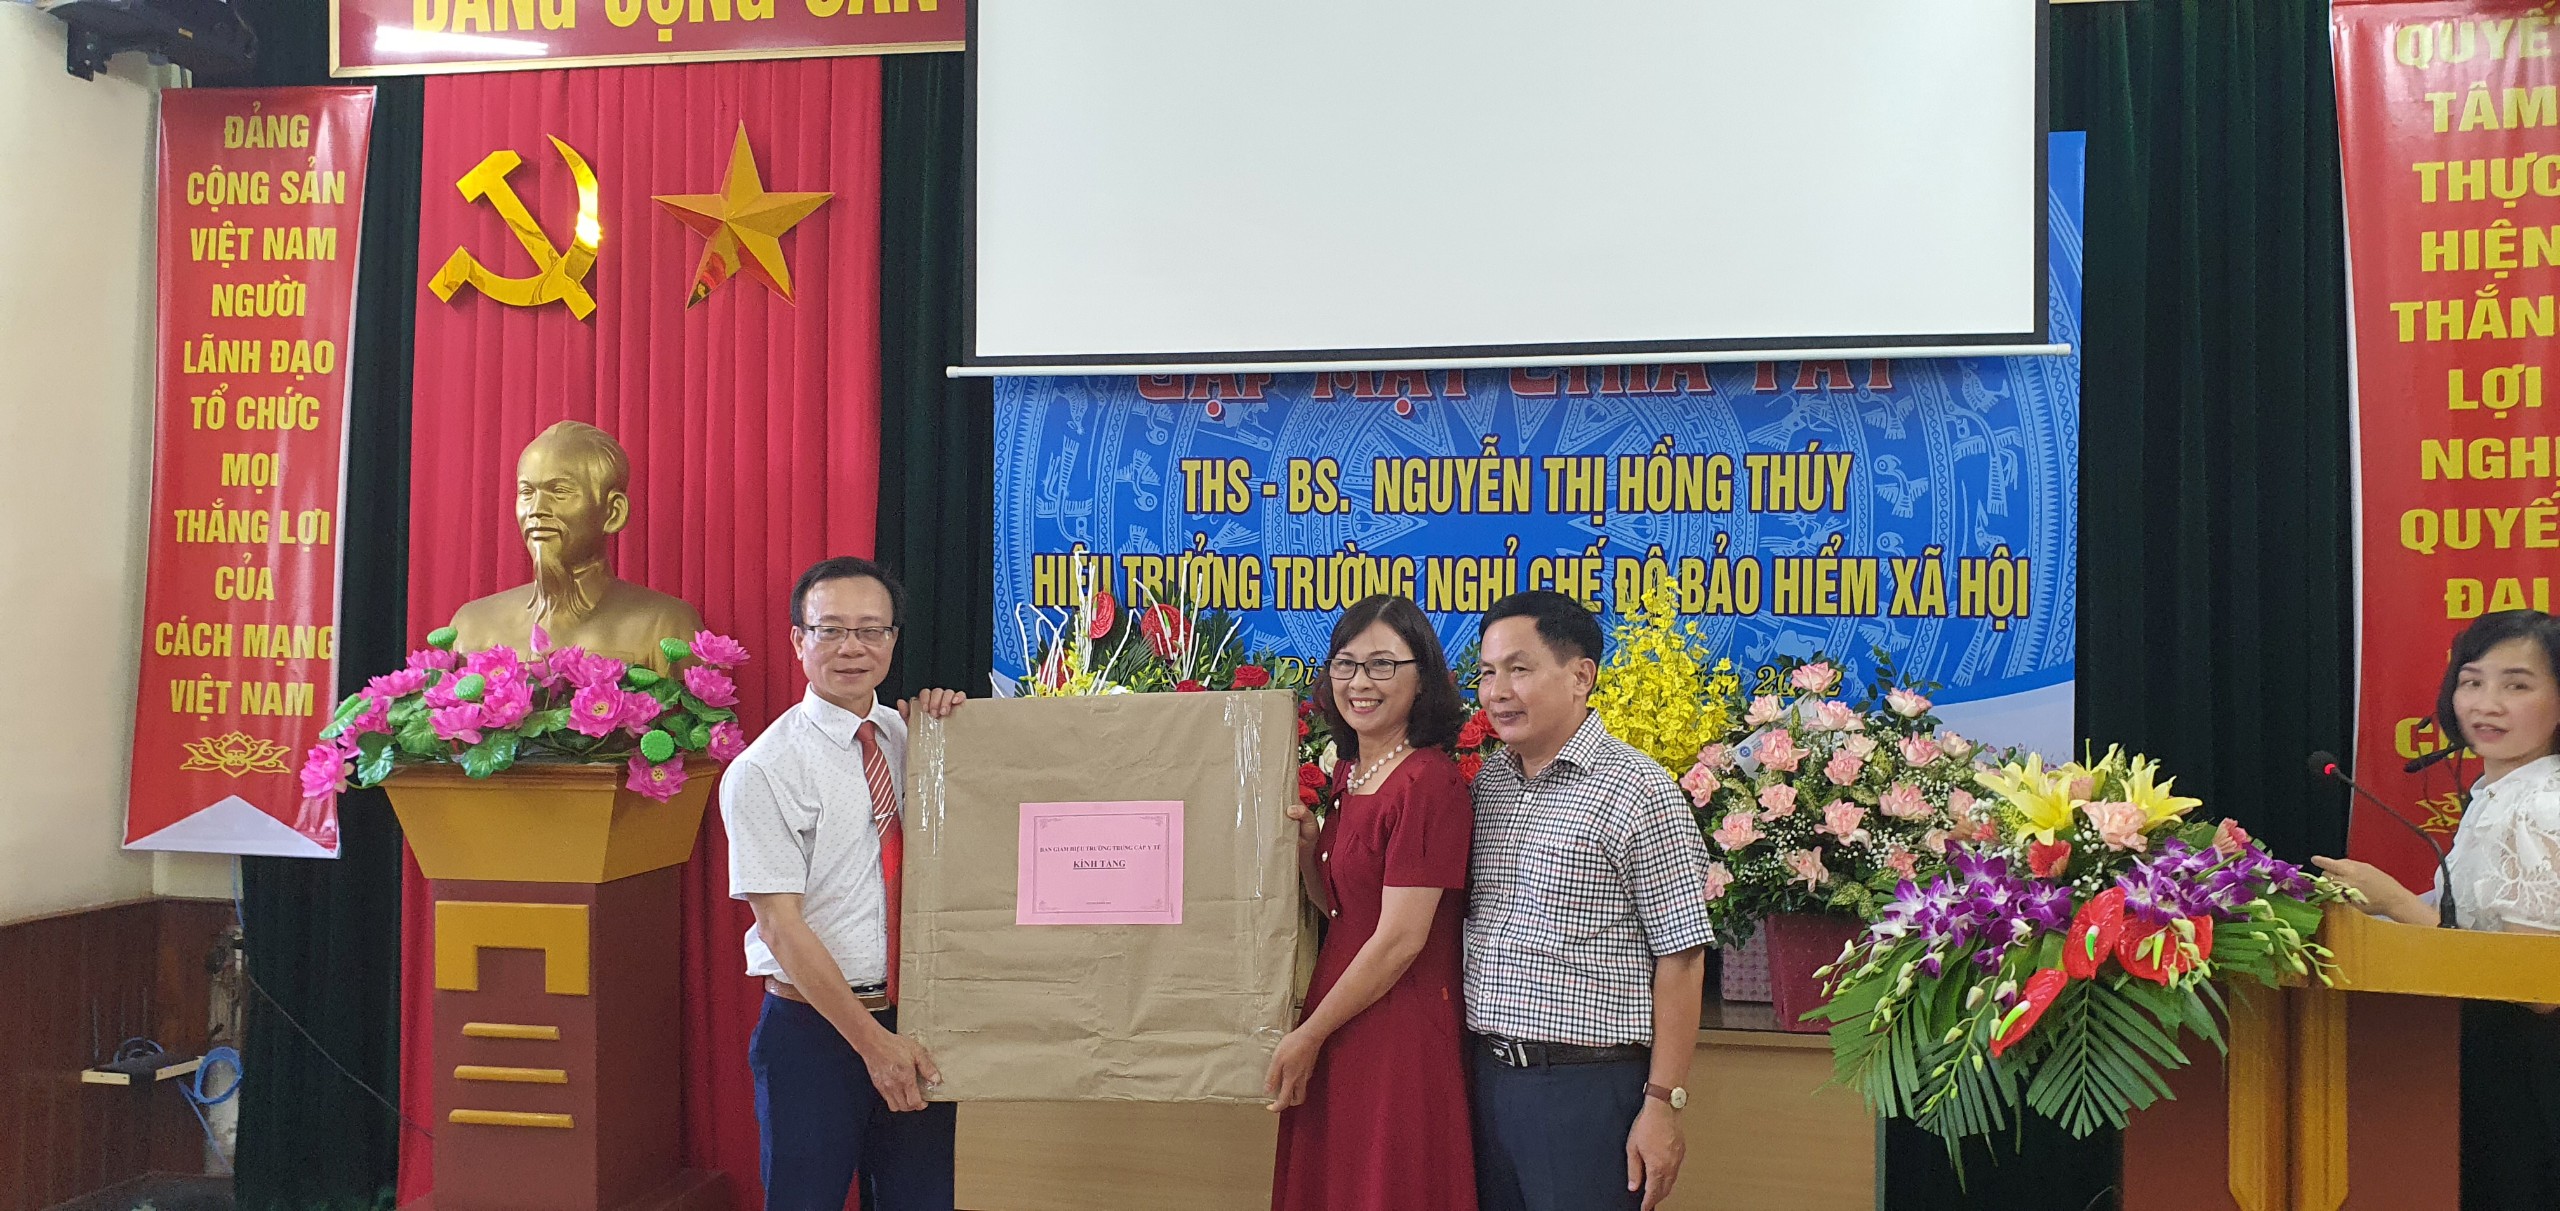 Gặp mặt chia tay Hiệu trưởng - Thạc sỹ - Bác sỹ Nguyễn Thị Hồng Thúy nghỉ chế độ bảo hiểm xã hội